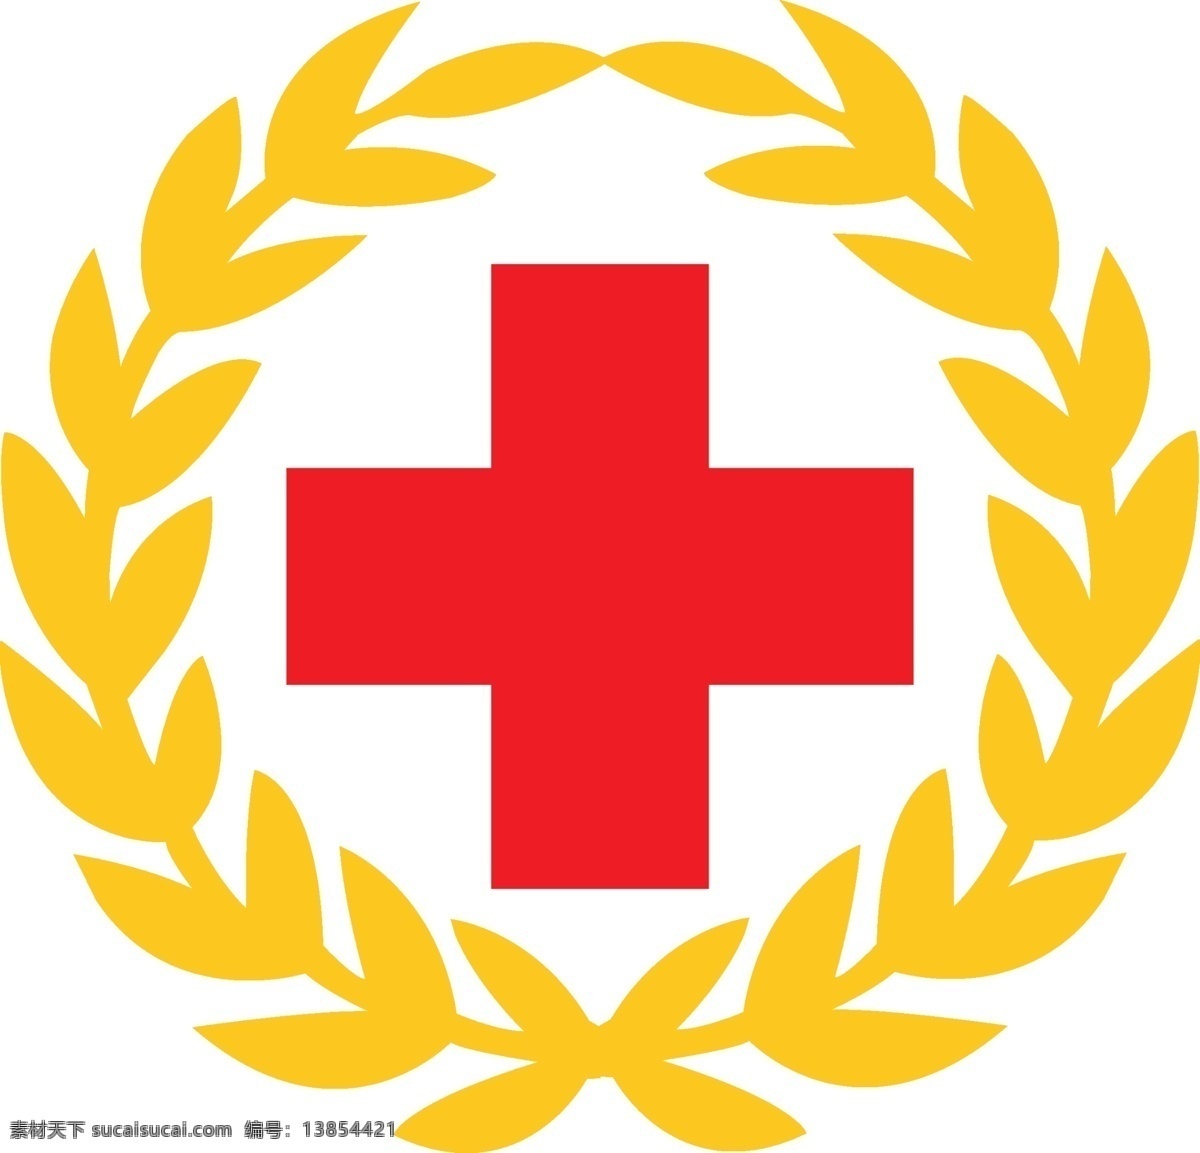 中国红十字会 麦穗 标志 中国 红十字会 其他矢量 矢量素材 矢量图库